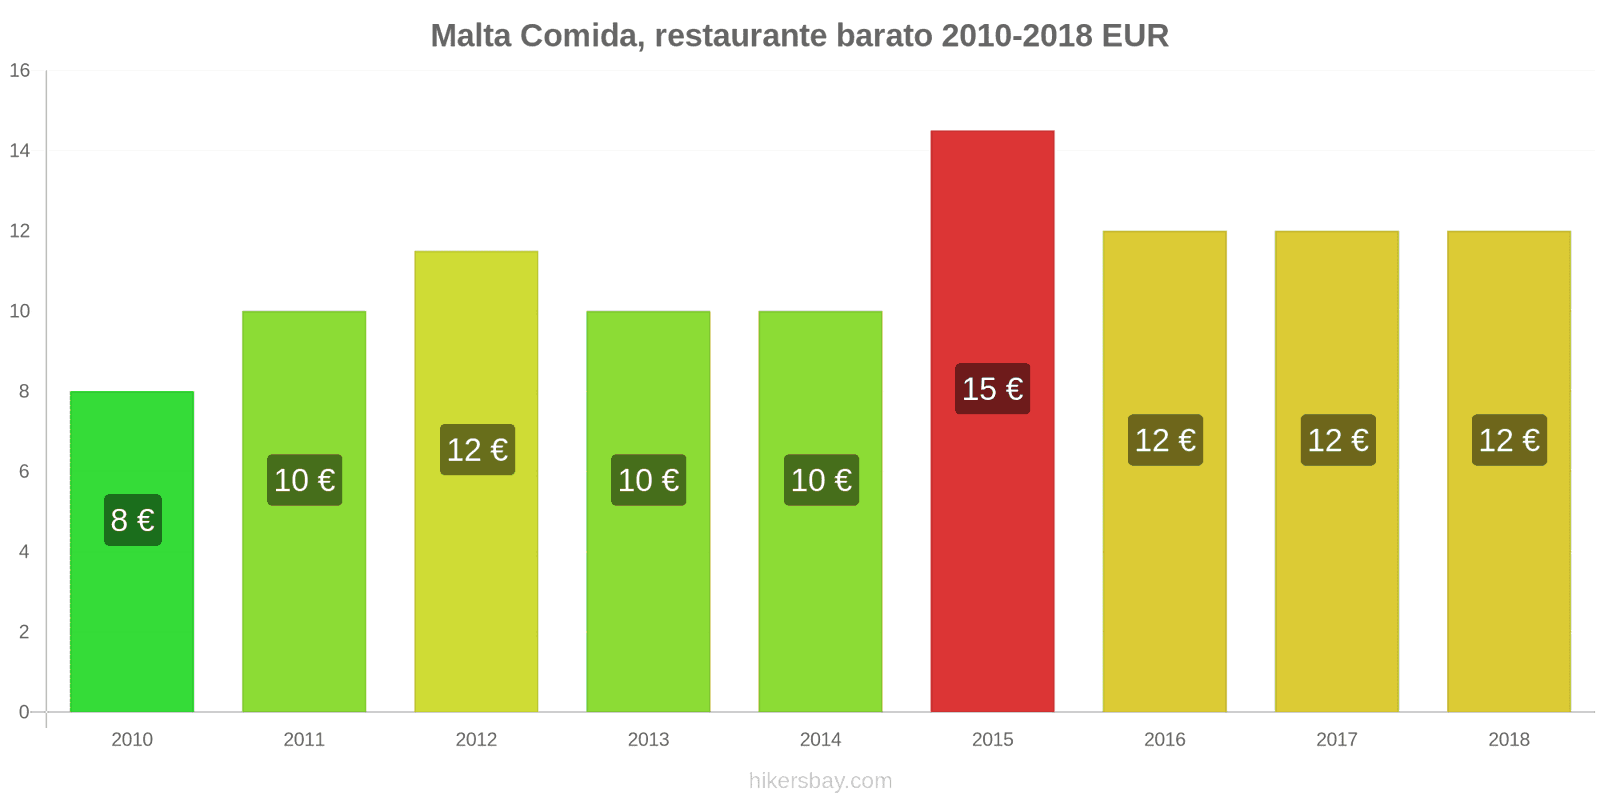 Malta cambios de precios Comida en un restaurante económico hikersbay.com